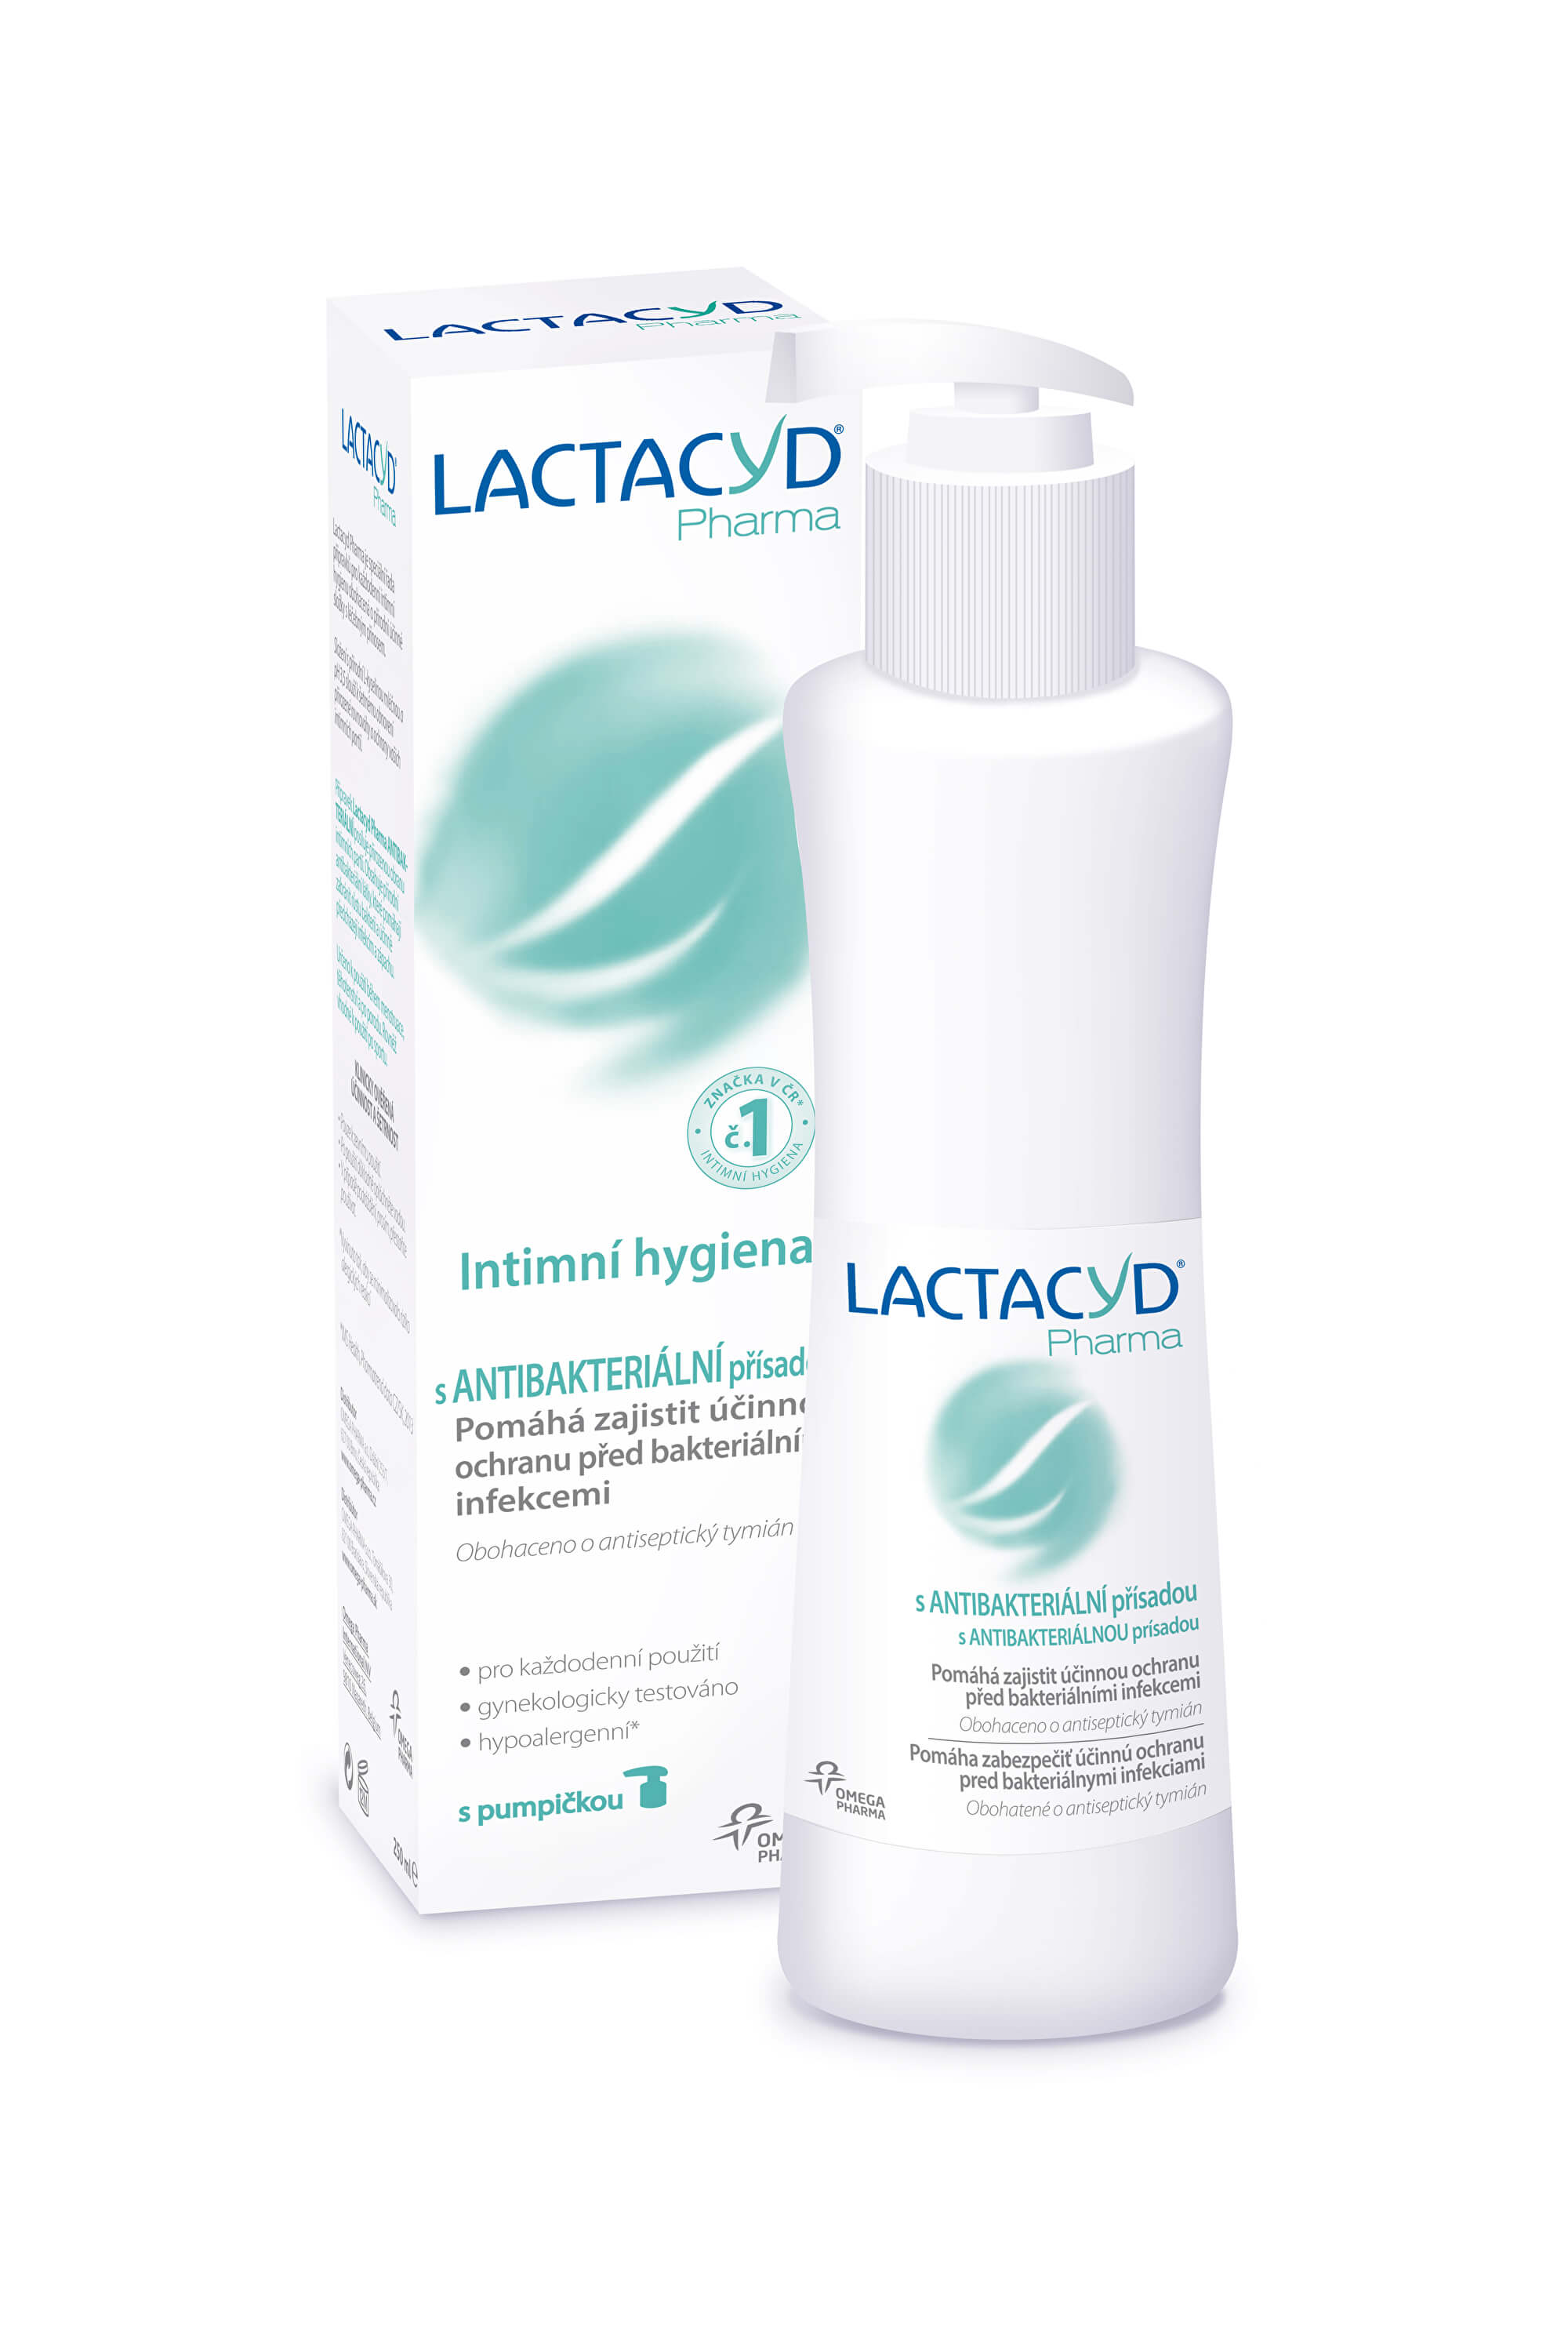 Zobrazit detail výrobku Omega Pharma Lactacyd Pharma s antibakteriální přísadou 250 ml